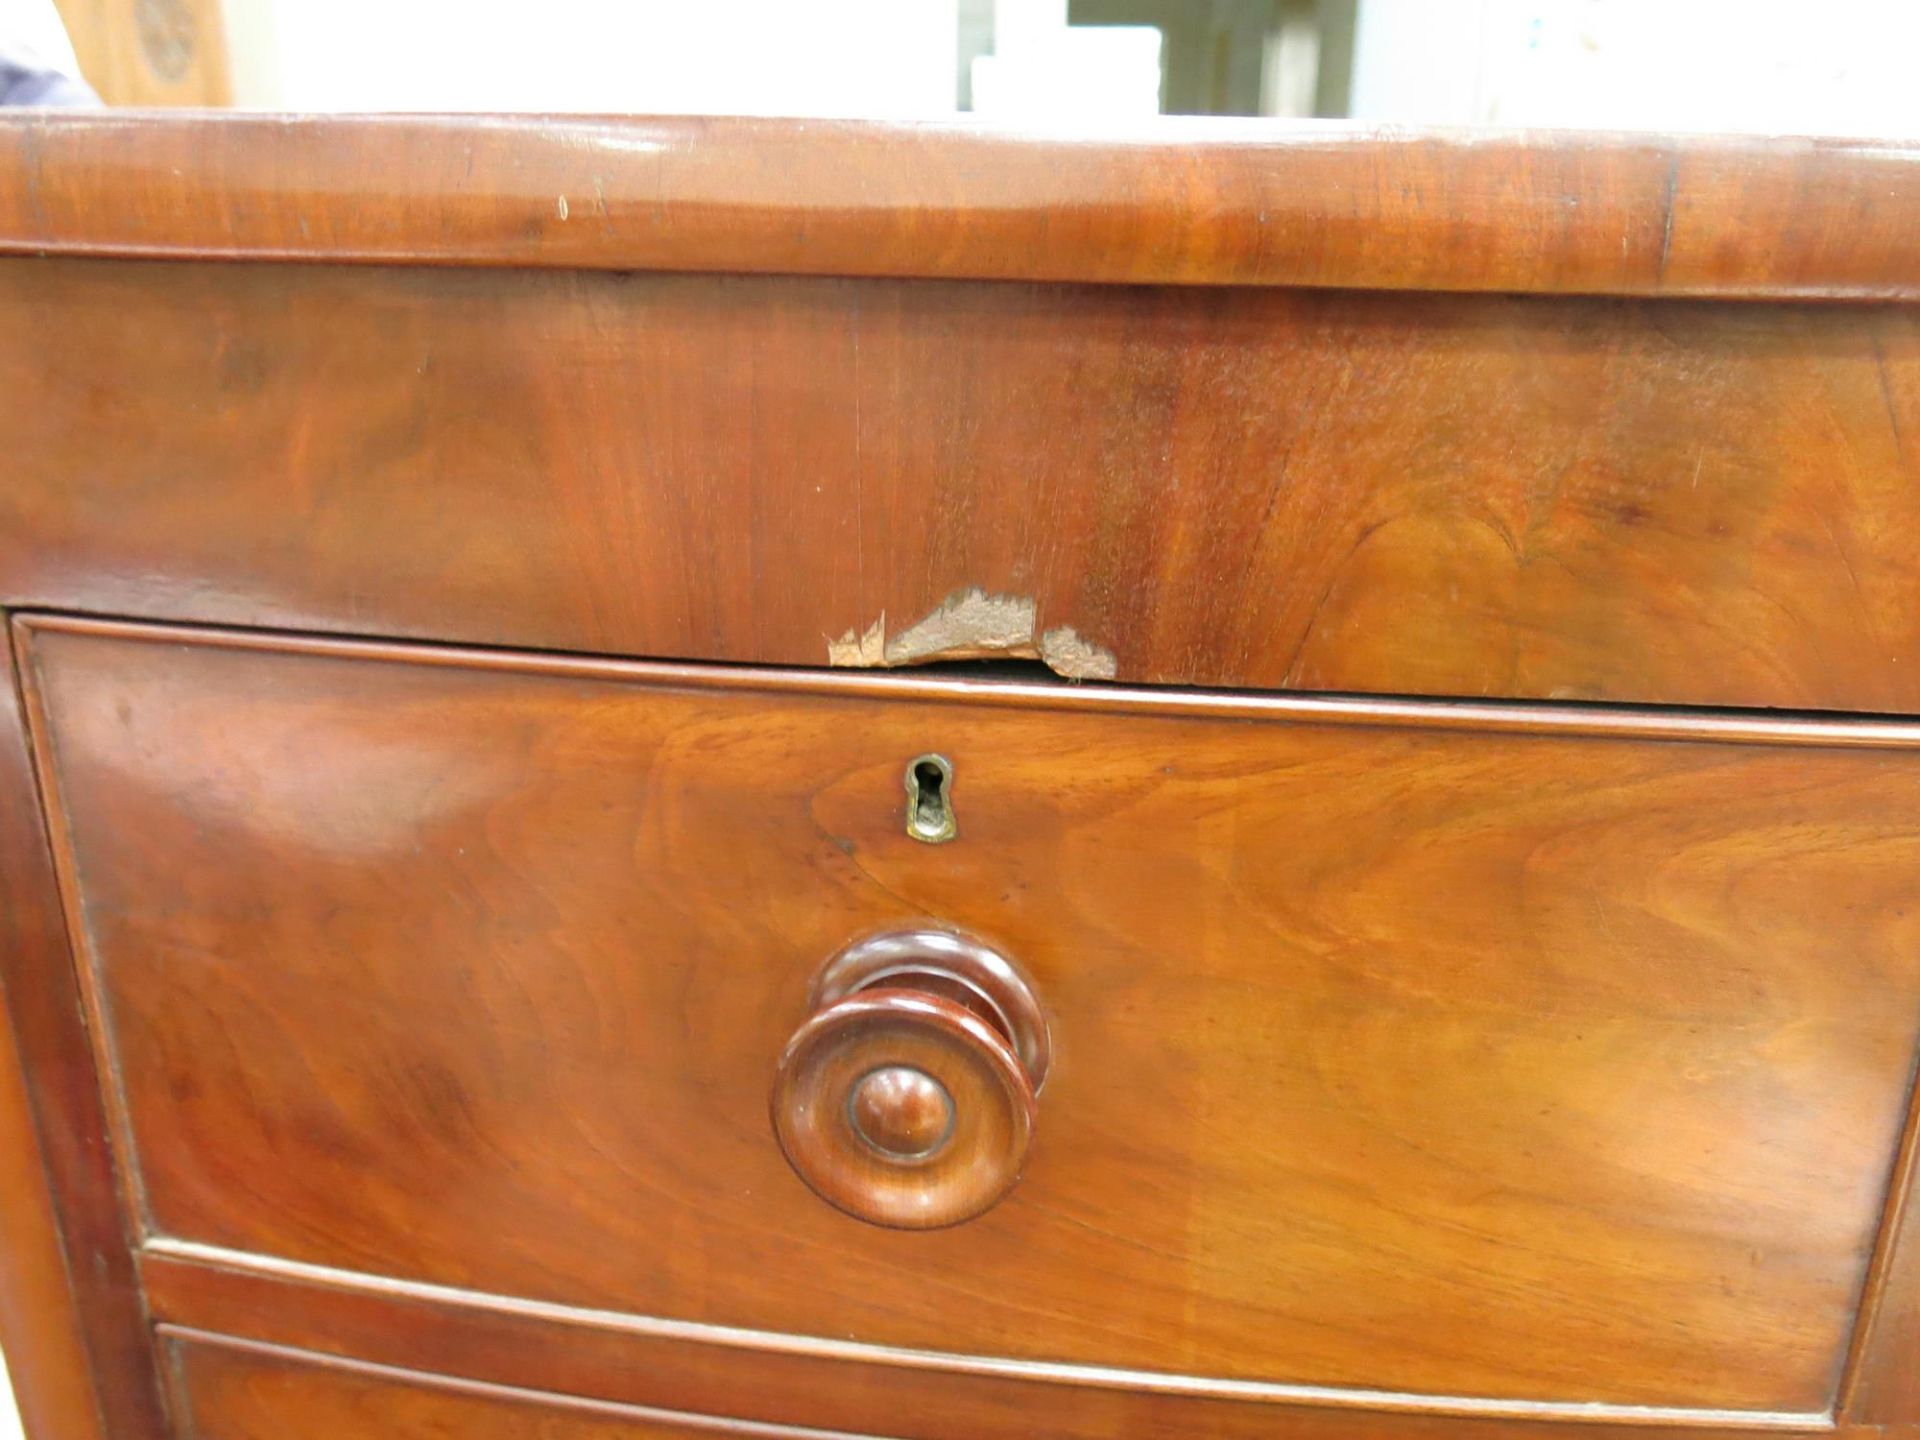 A Victorian Mahogany five drawer chest (H 125cm, W 104cm, D 56cm) (est £100 - £120) - Image 2 of 3